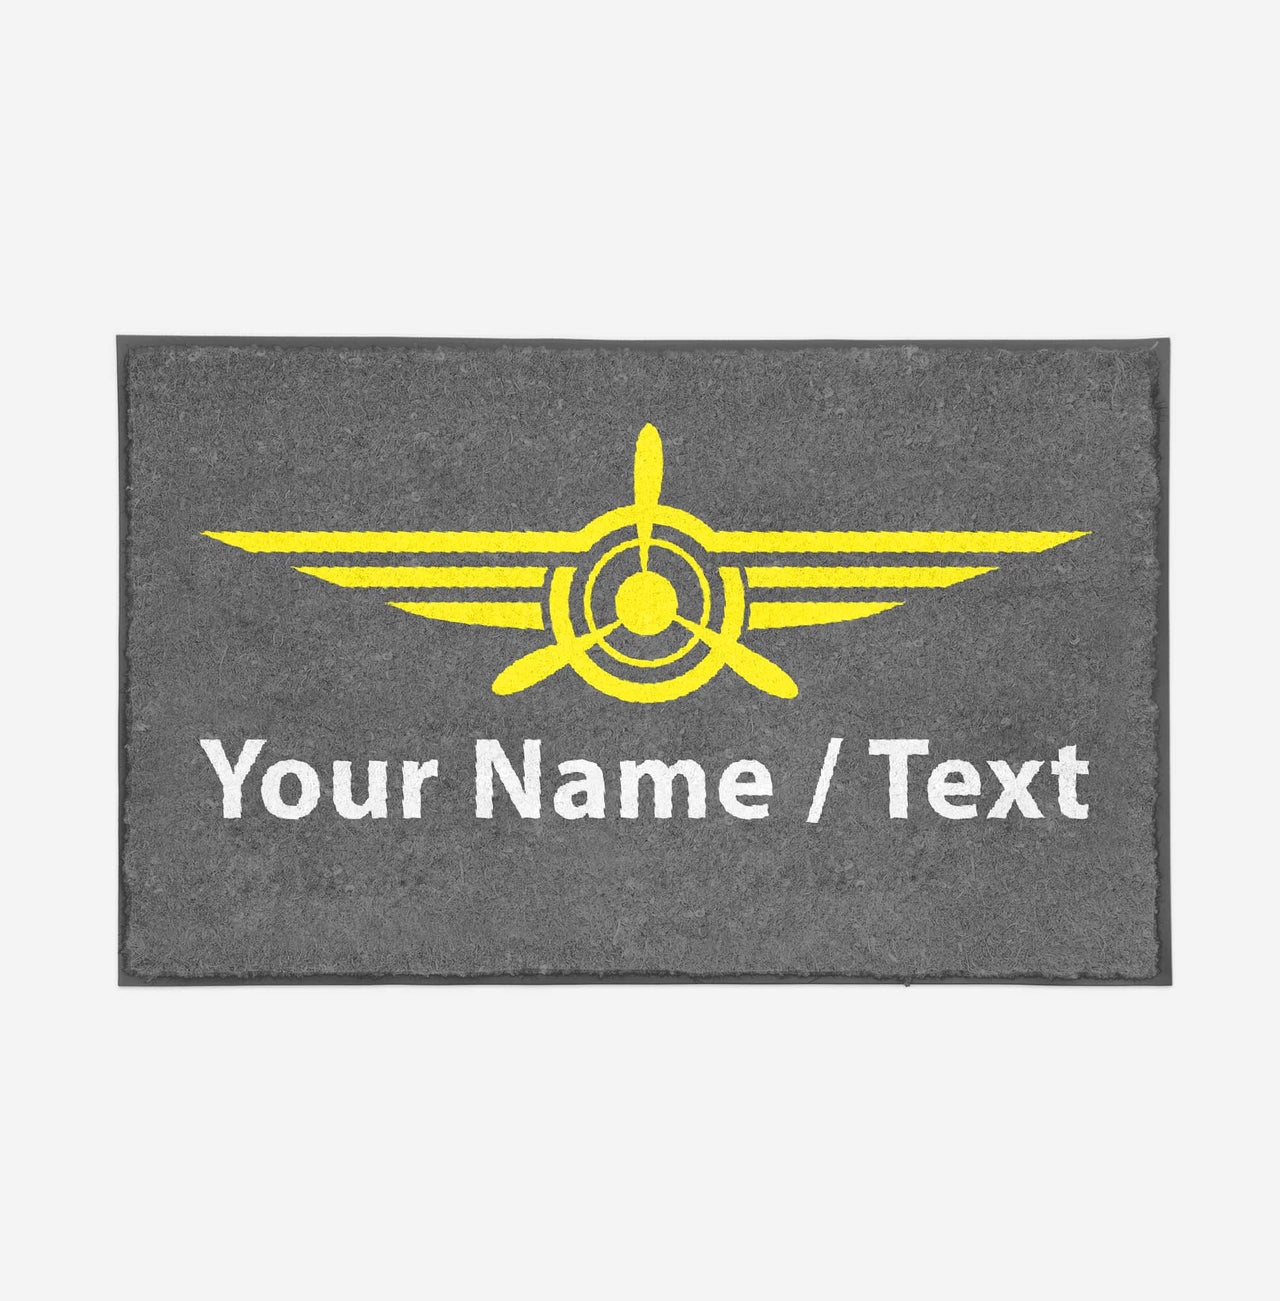 Customizable Name/Text & Badge (3) Designed Door Mats